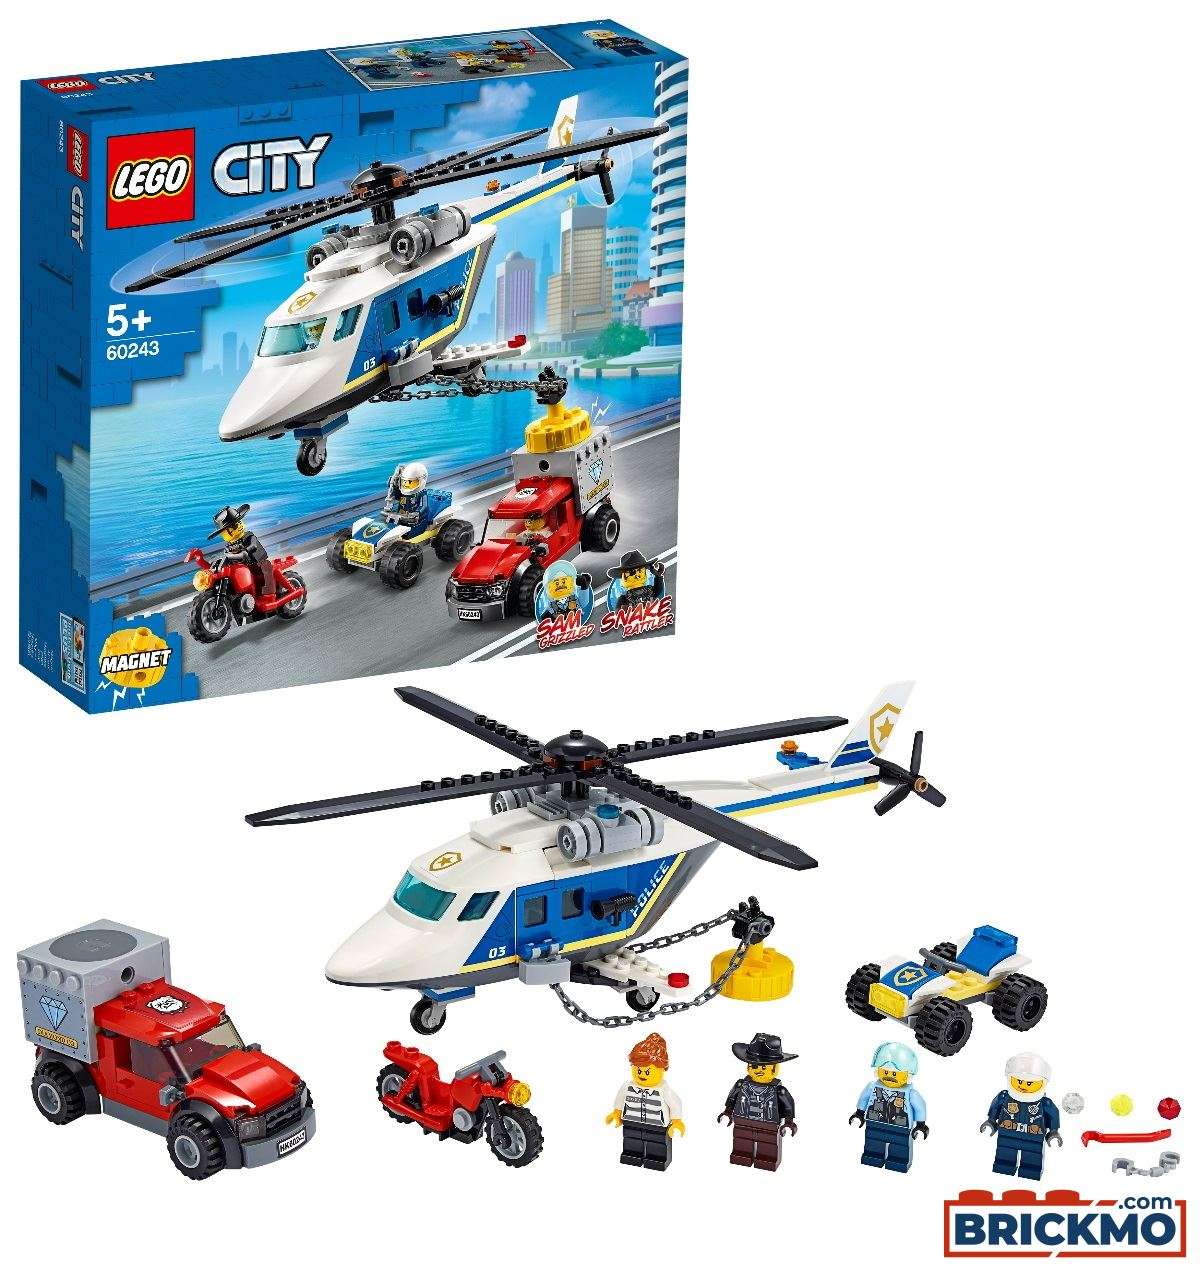 LEGO City 60243 Polizei Verfolgungsjagd mit dem Polizeihubschrauber 60243